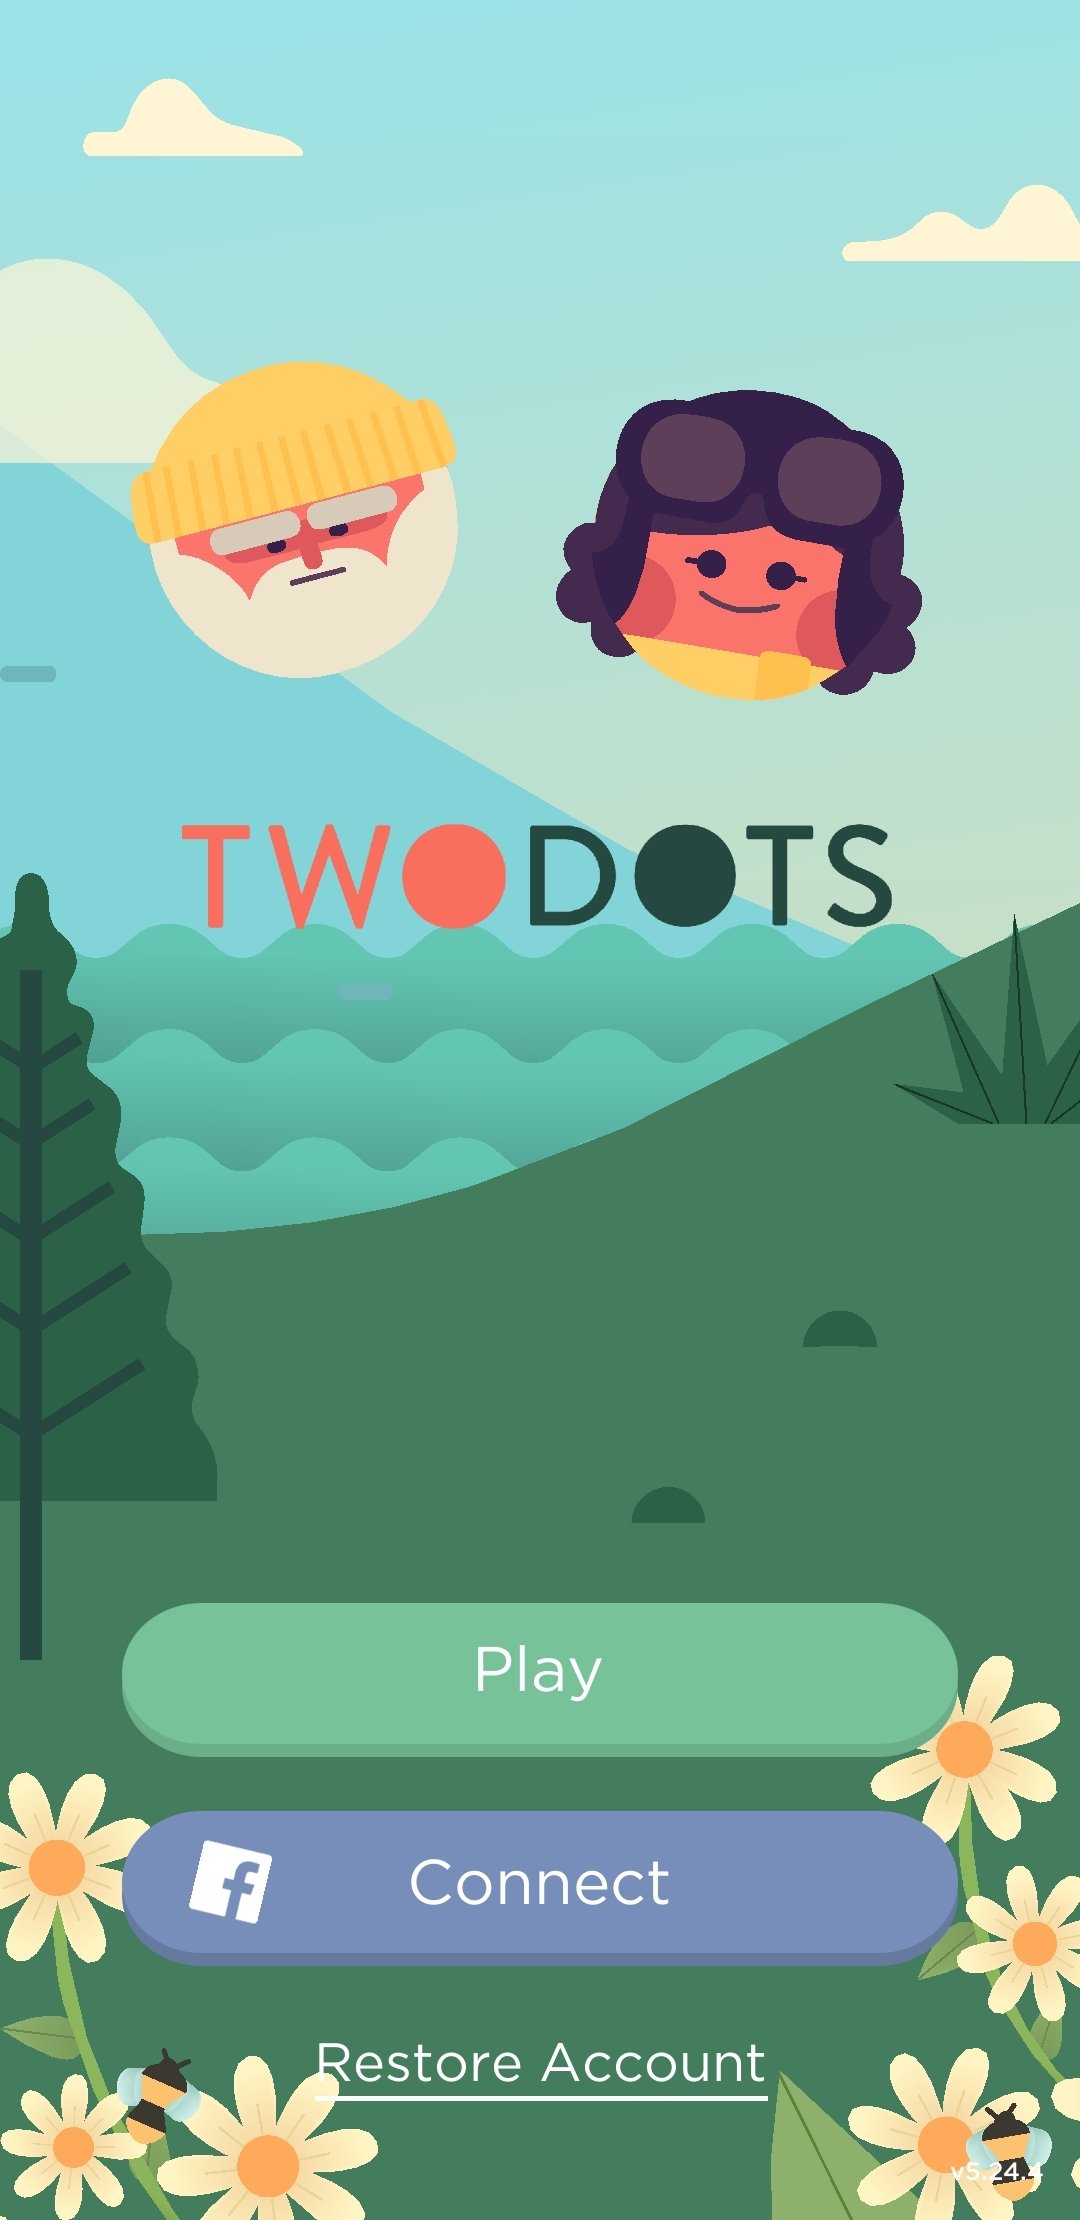 Two Dots, I Love Hue, 94% e mais: esses jogos de Android valem a pena?